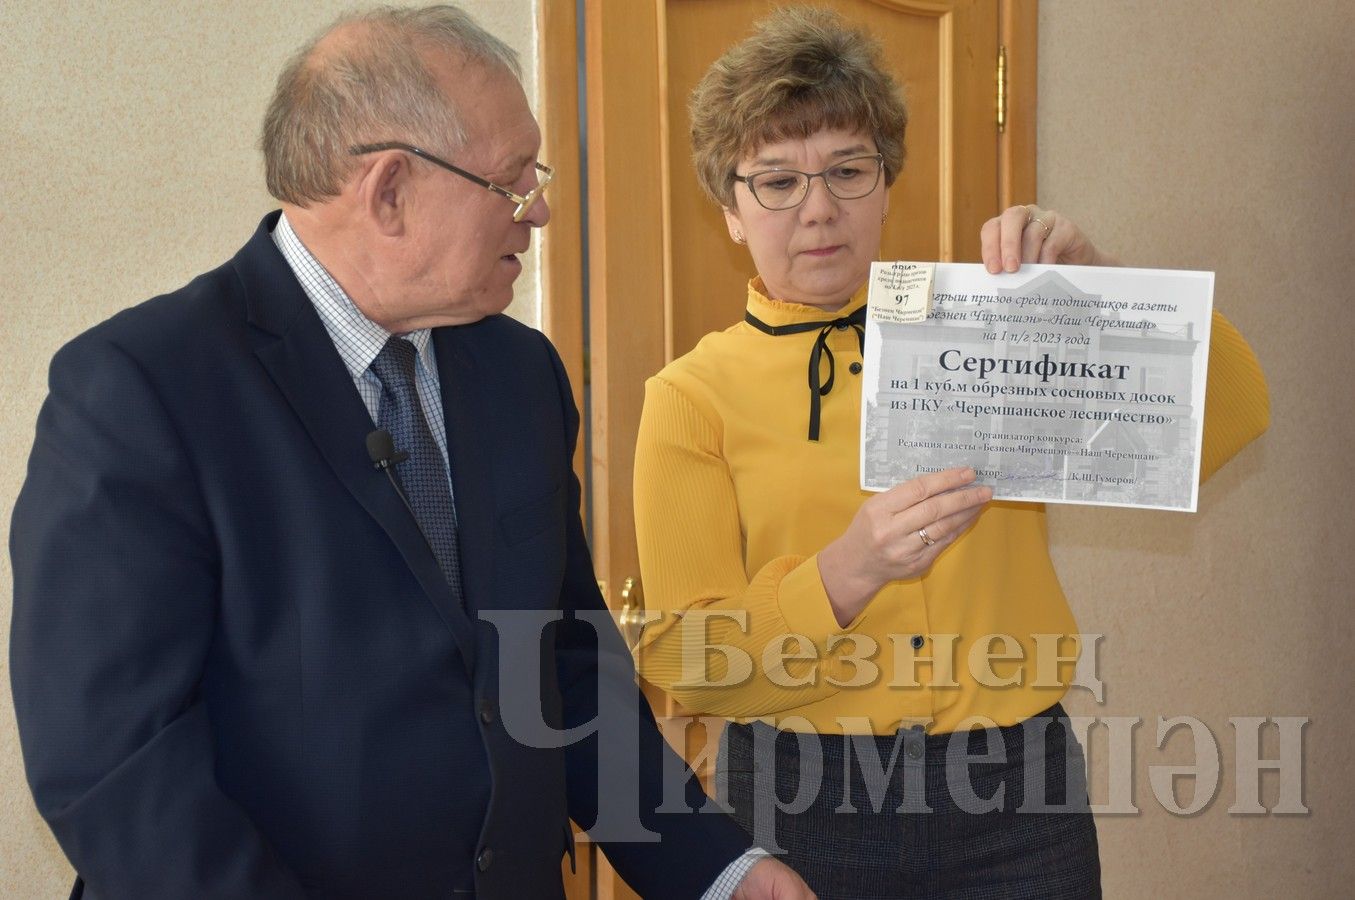 Районная газета "Безнен Чирмешэн" ("Наш Черемшан") провела розыгрыш призов среди подписчиков (ФОТОРЕПОРТАЖ)